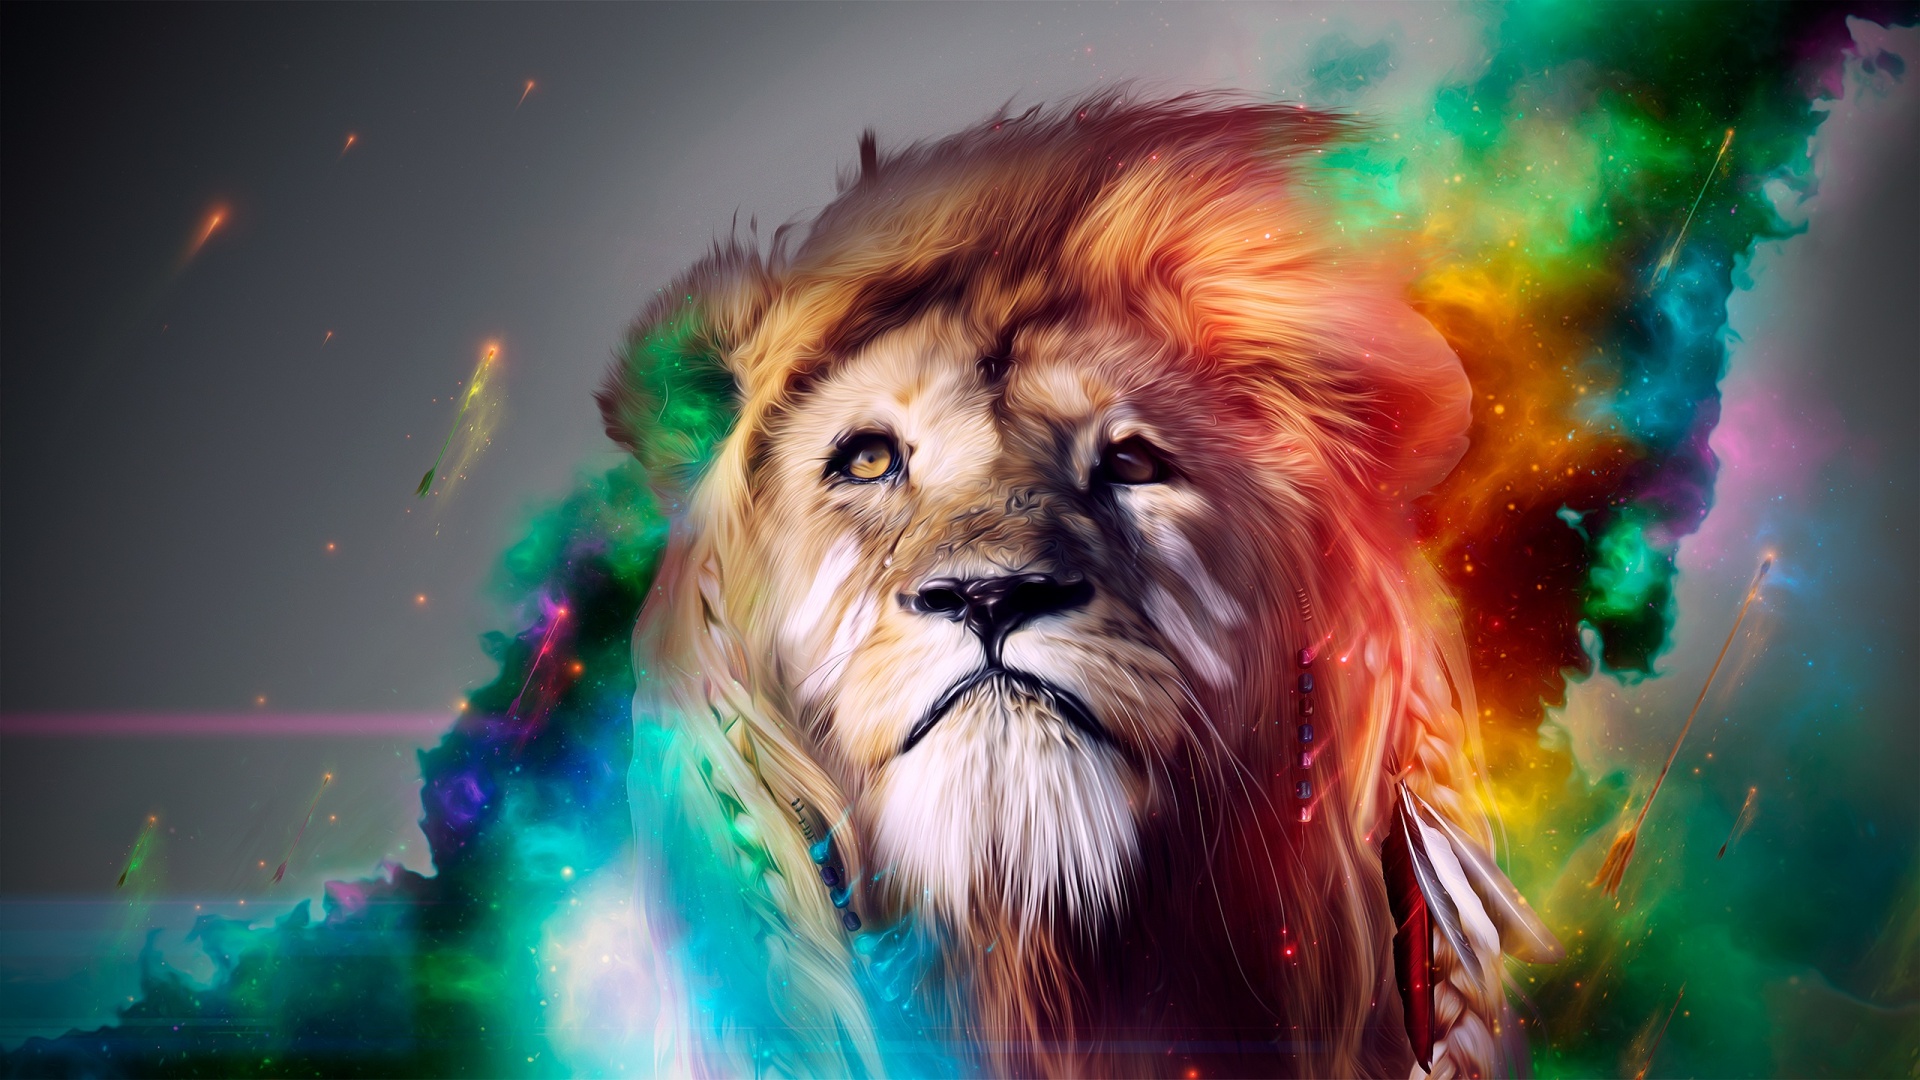 cool-lion-wallpaper-hd -